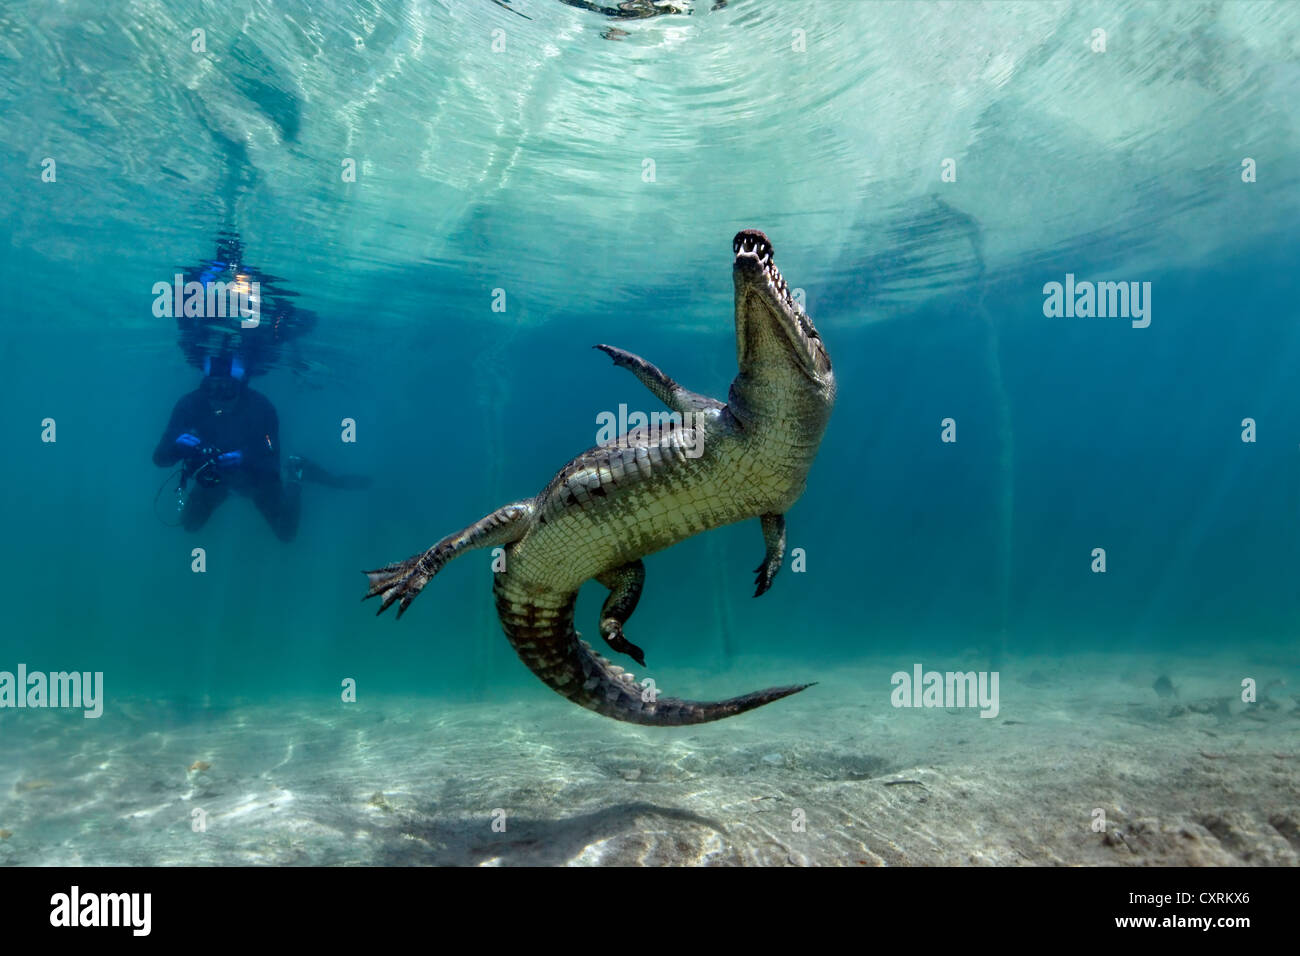 Skin-Diver guardando nuoto coccodrillo di acqua salata o di estuario o coccodrillo Indo-pacifico Crocodile (Crocodylus porosus) Foto Stock